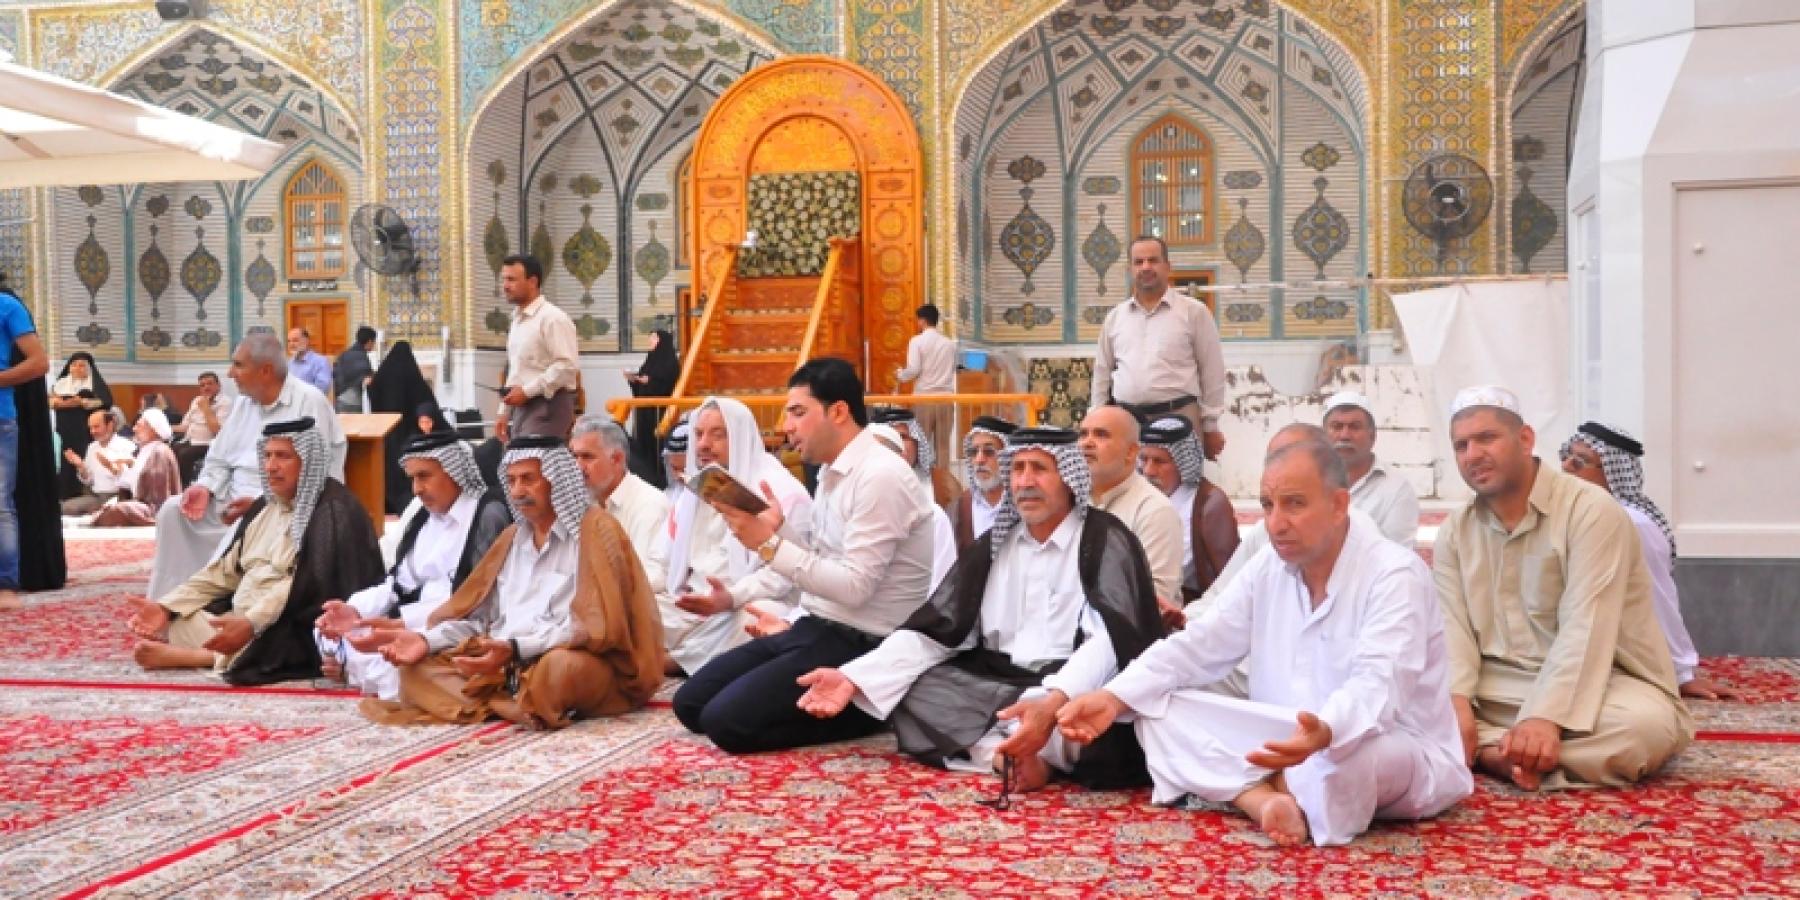 قسم العلاقات العامة في العتبة العلوية المقدسة يواصل برنامجه لخدمة كبار السن لزيارة الإمام (أمير المؤمنين عليه السلام)